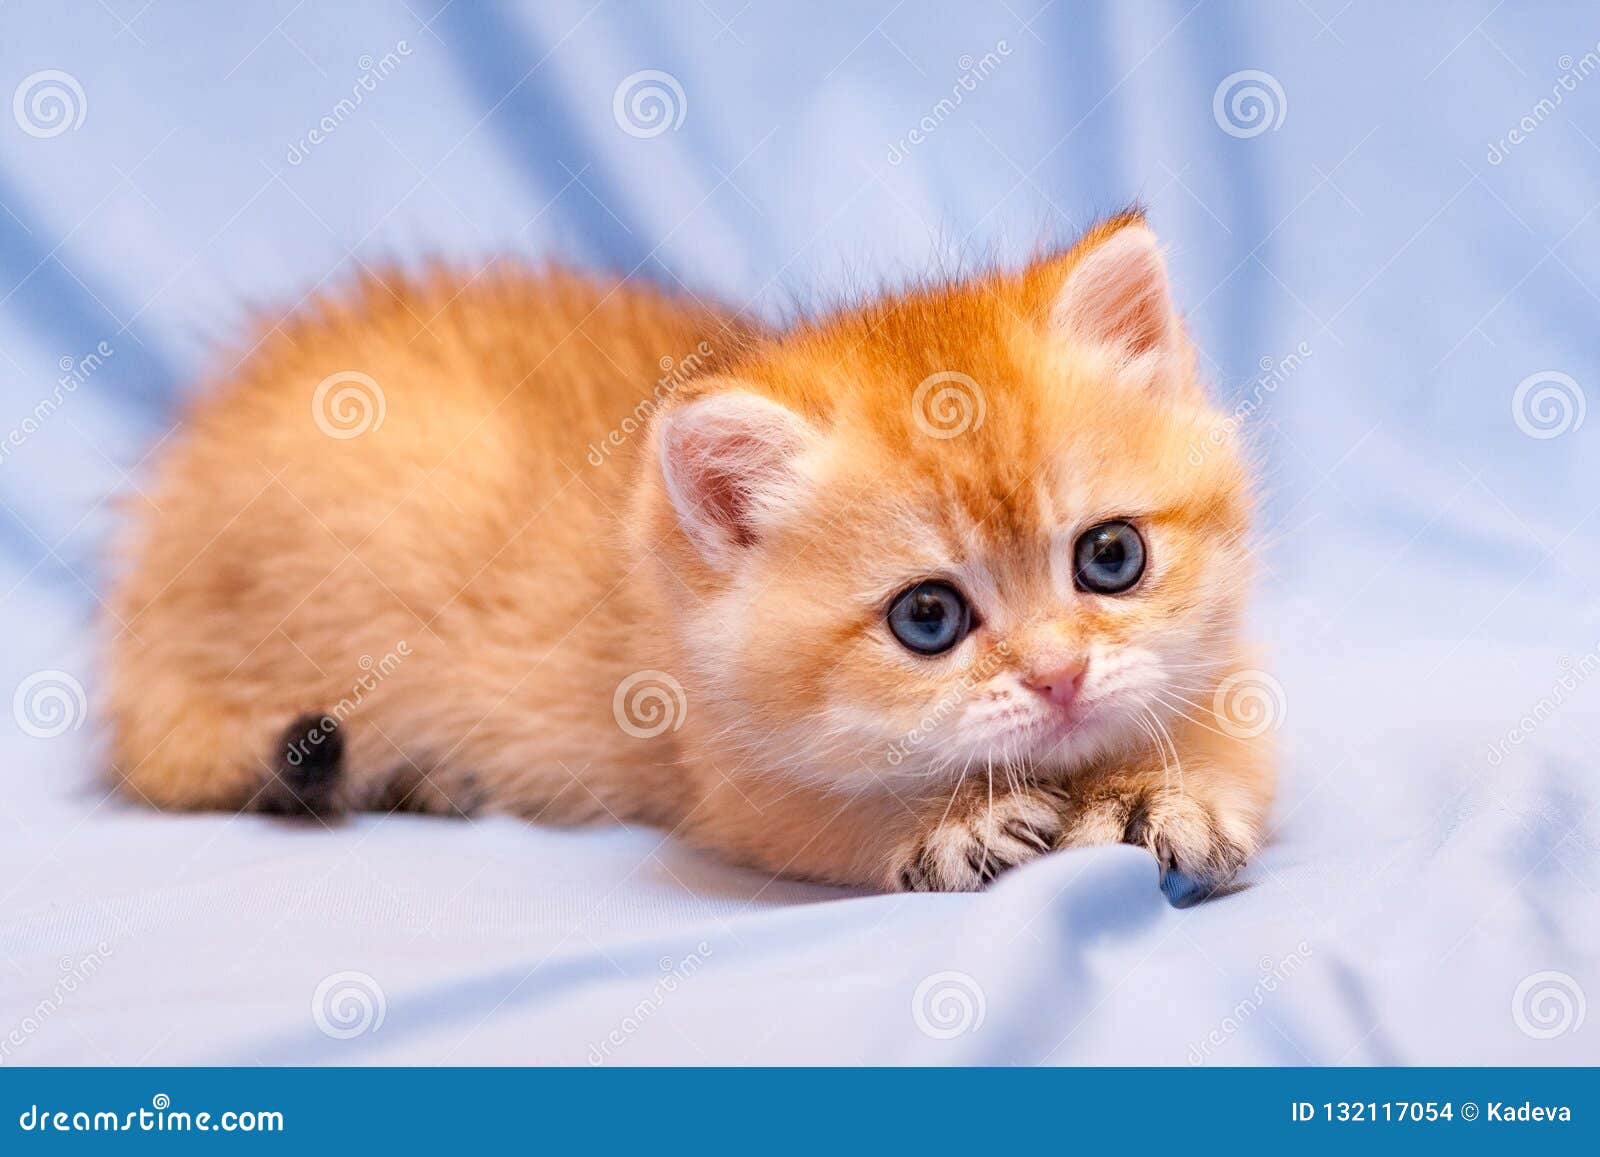 Chào mừng bạn đến xem hình ảnh một chú mèo cam đáng yêu như một thiên thần. Với đôi mắt to tròn và mái lông mịn màng, chú mèo này sẽ làm trái tim bạn tan chảy. Đừng bỏ lỡ cơ hội dễ thương này và cùng chiêm ngưỡng mèo cam đáng yêu trong ảnh.